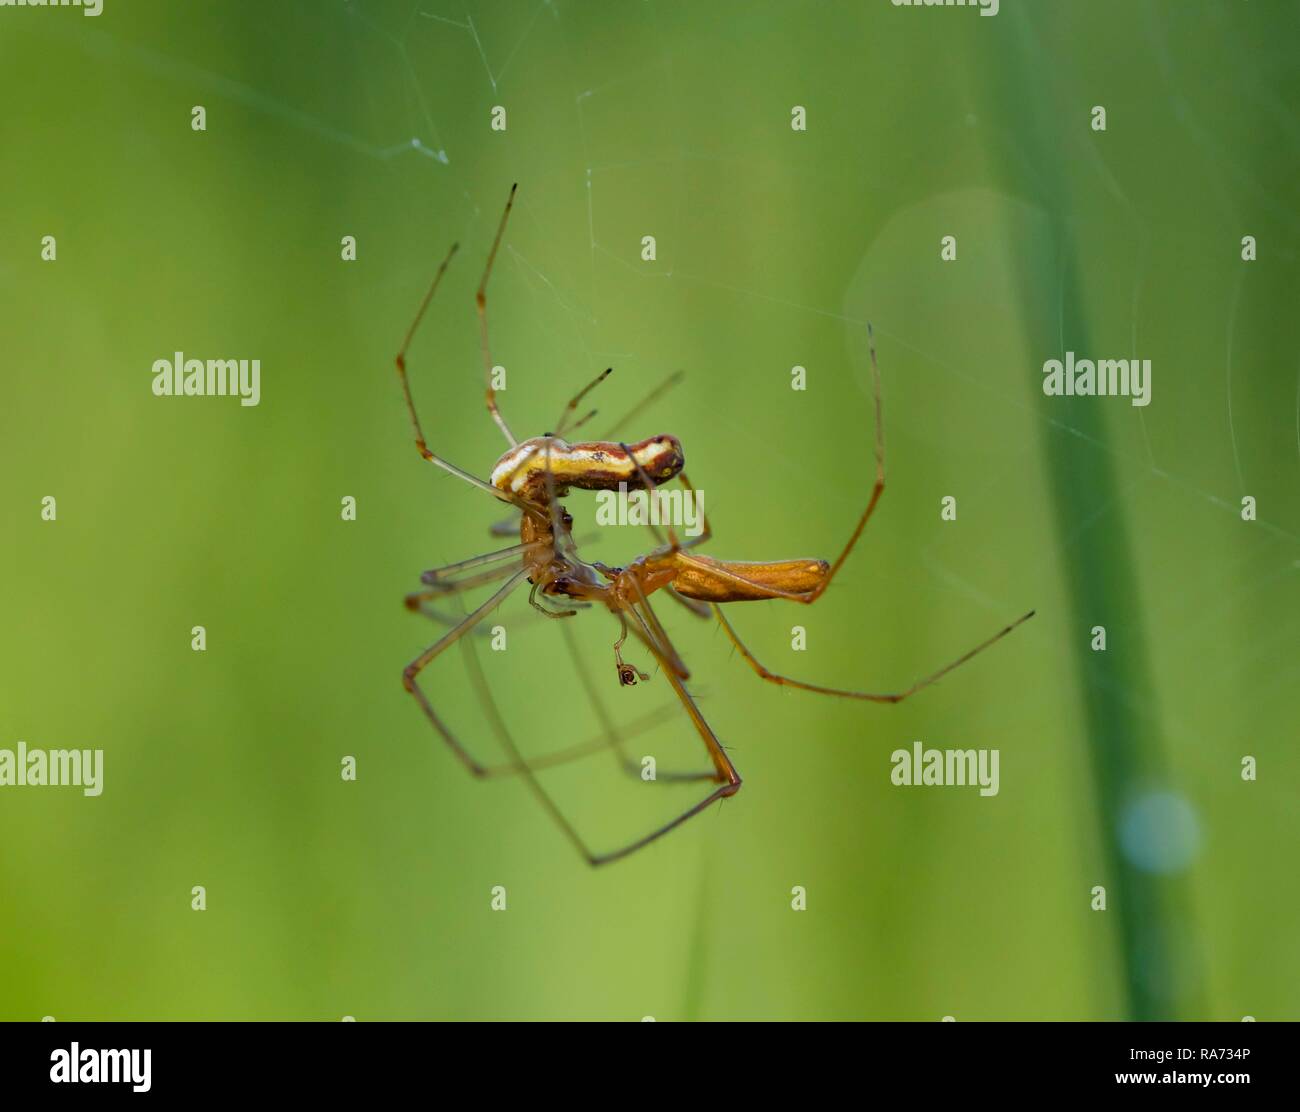 Stretcher Spinnen (tetragnatha extensa) in Paaren, Bayern, Deutschland Stockfoto